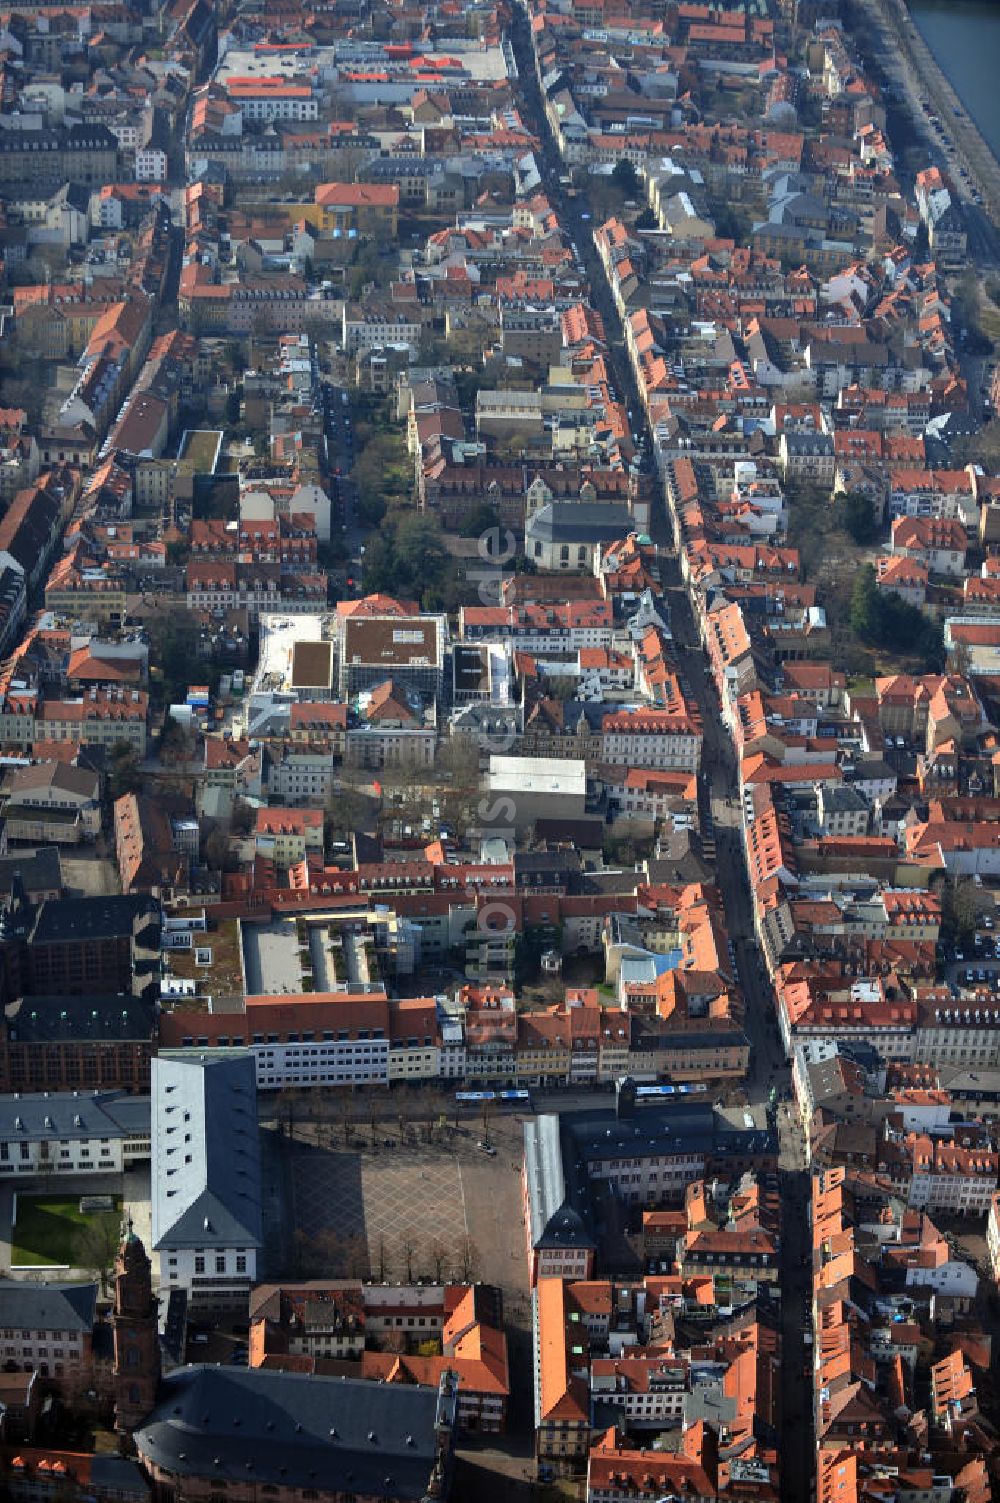 Luftaufnahme Heidelberg - Die Innenstadt von Heidelberg entlang der Hauptstraße